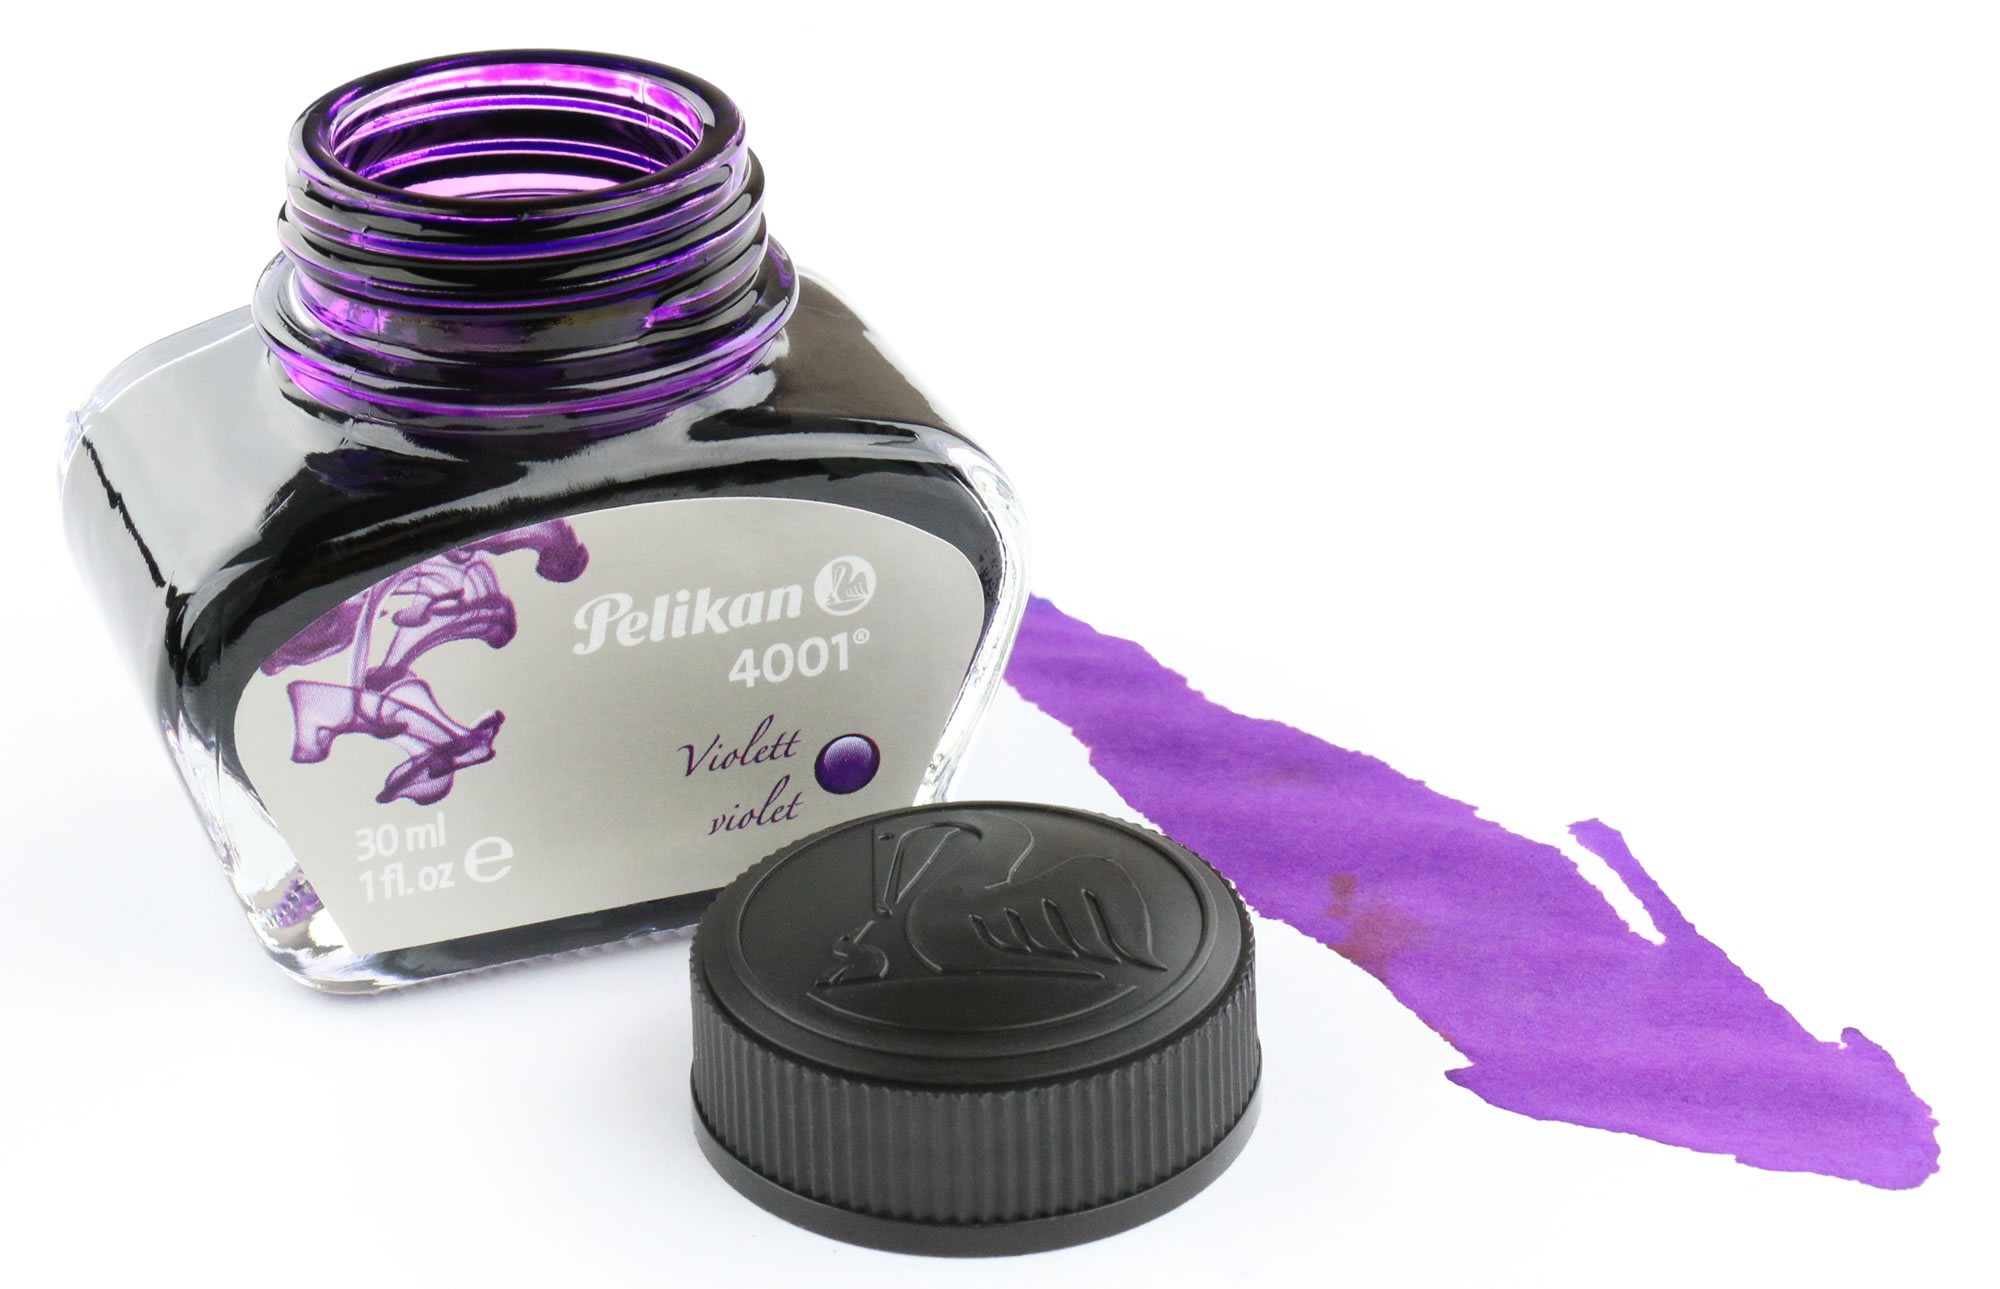 Pen Chalet Ink Review & Giveaway: Pelikan 4001 Violet Ink - Pen Chalet